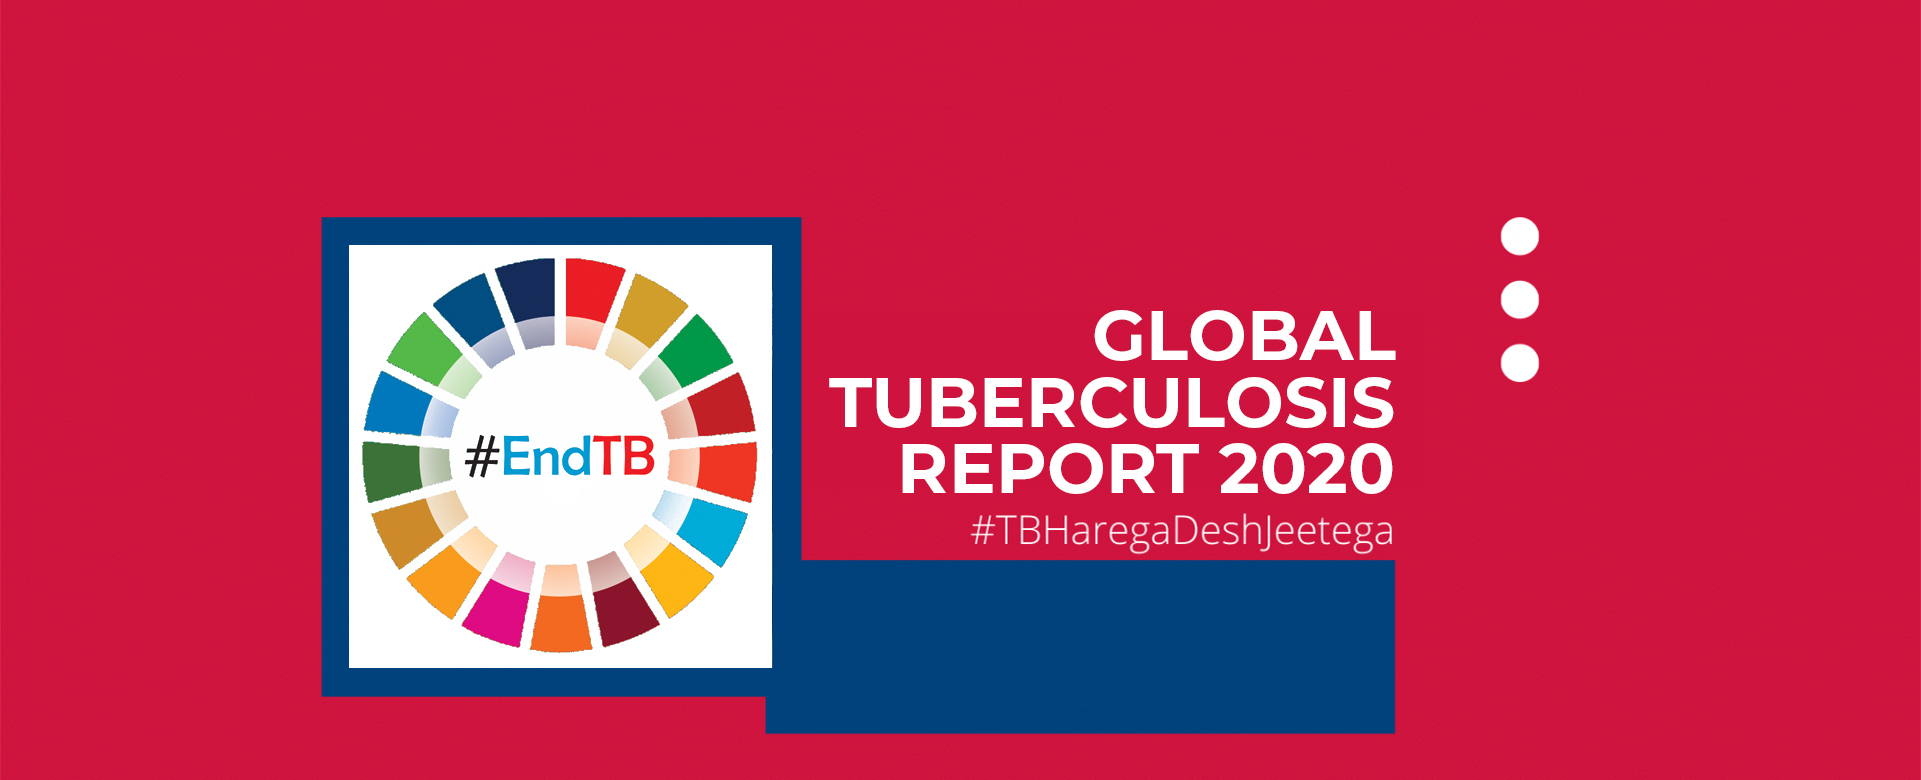 Global Tuberculosis Report 2020